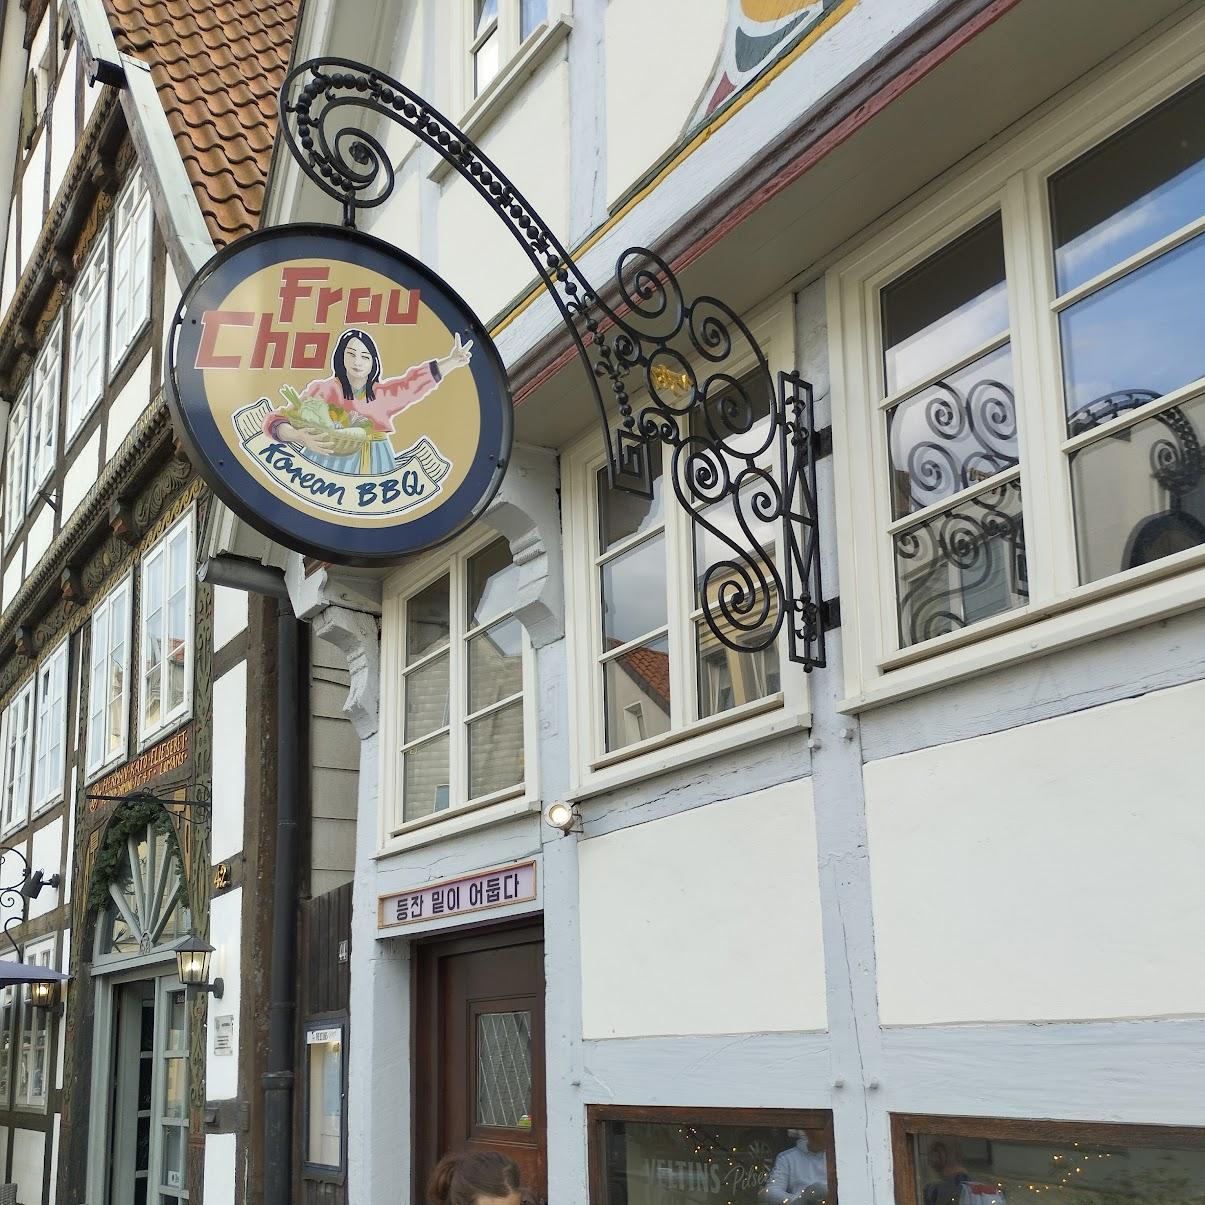 Restaurant "Frau Cho" in Detmold